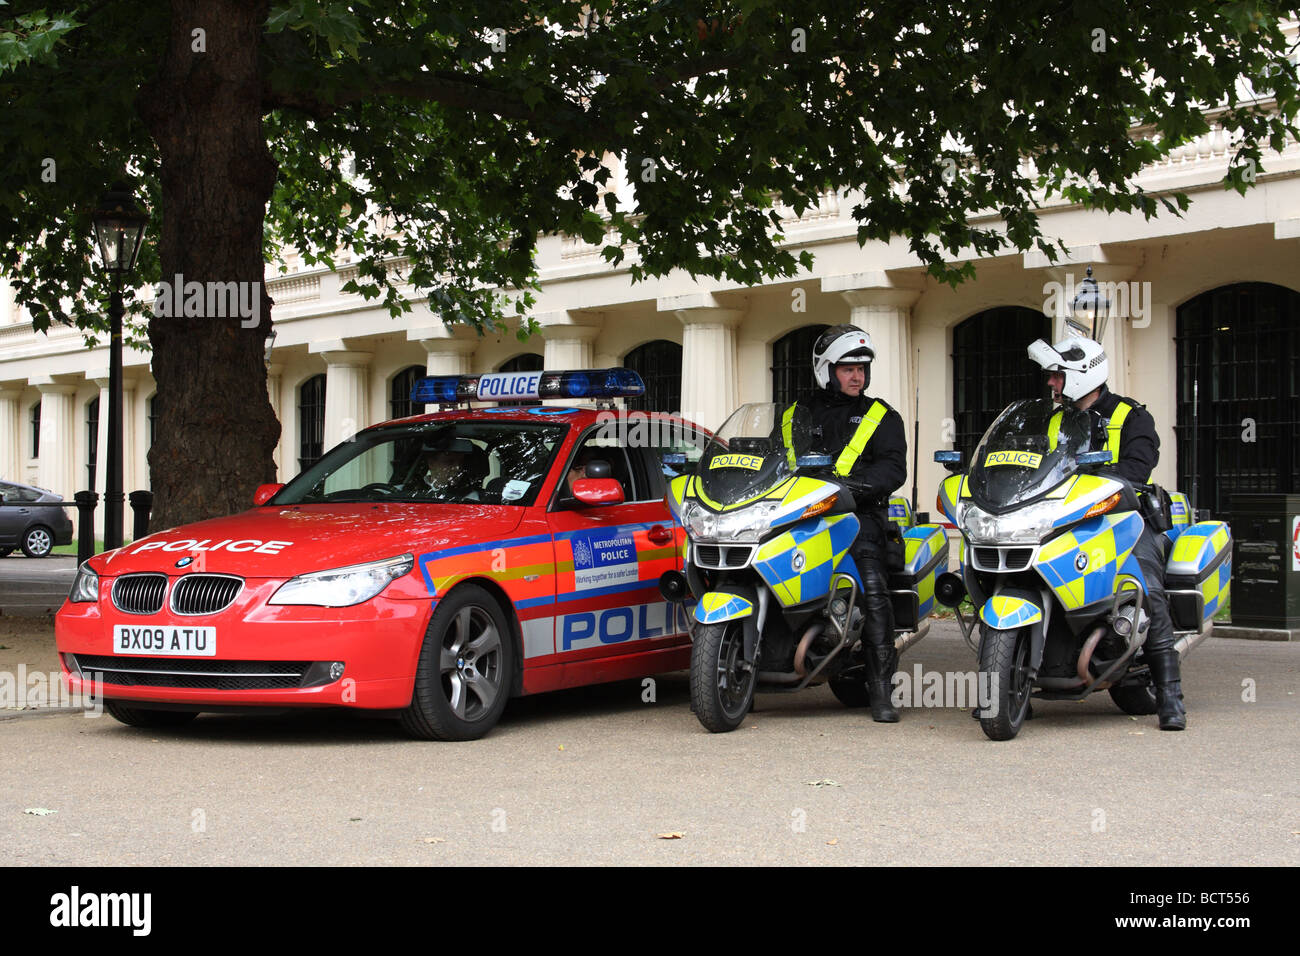 Les véhicules de la police métropolitaine, Westminster, Londres, Angleterre, Royaume-Uni Banque D'Images